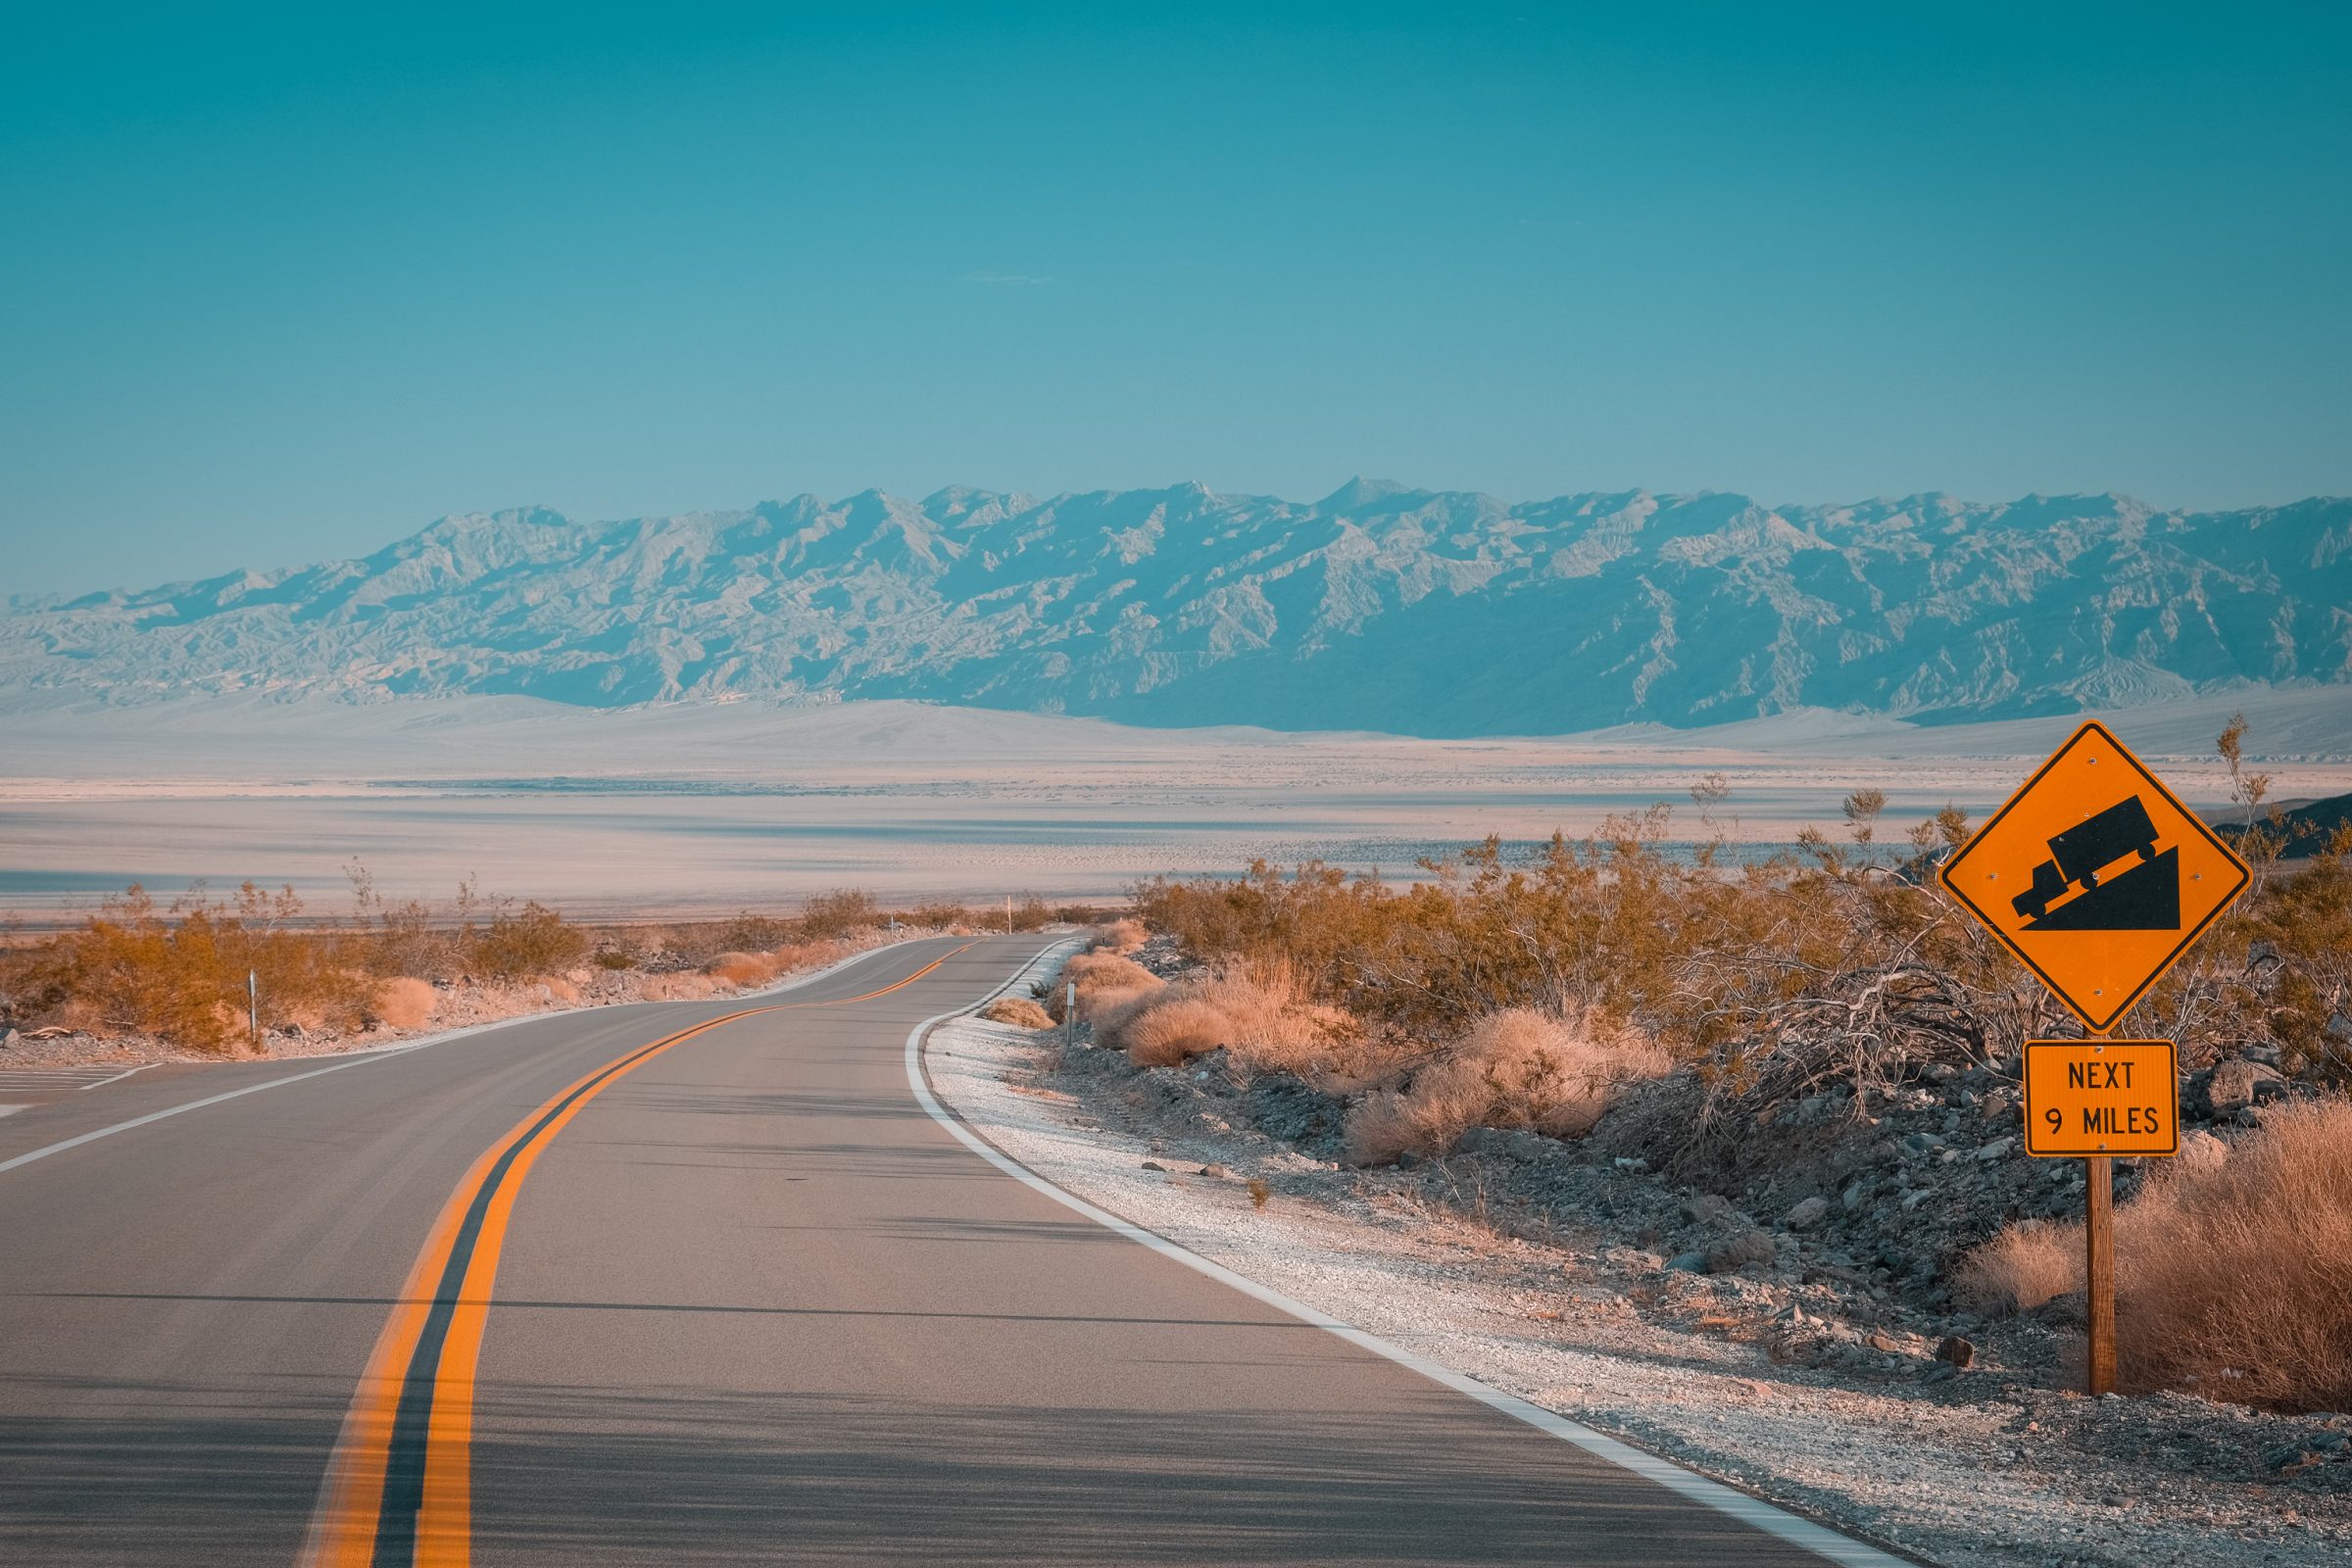 Im Death Valley wird Ihr Motor wahrscheinlich heiß. Behalten Sie die Temperatur Ihres Motors im Auge.